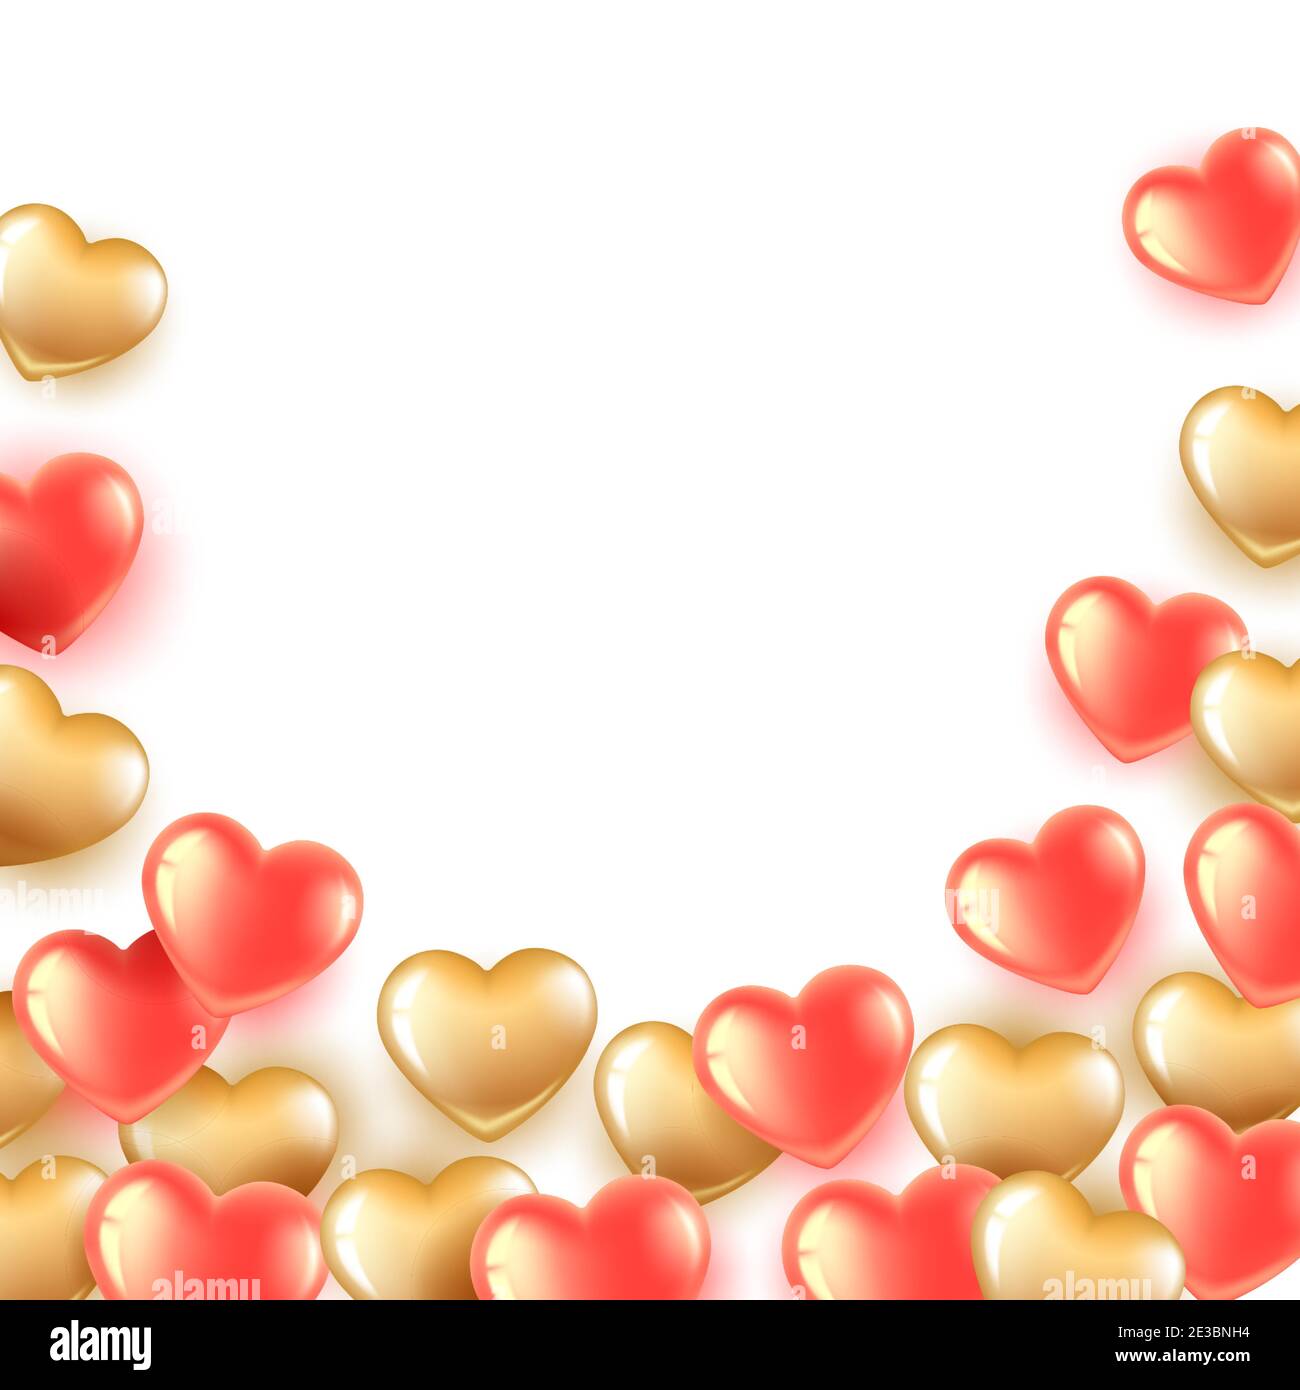 bannière avec ballons en forme de coeur rose et or. Les bulles volent de bas en haut. Illustration romantique pour la Saint-Valentin et les femmes internationales Illustration de Vecteur